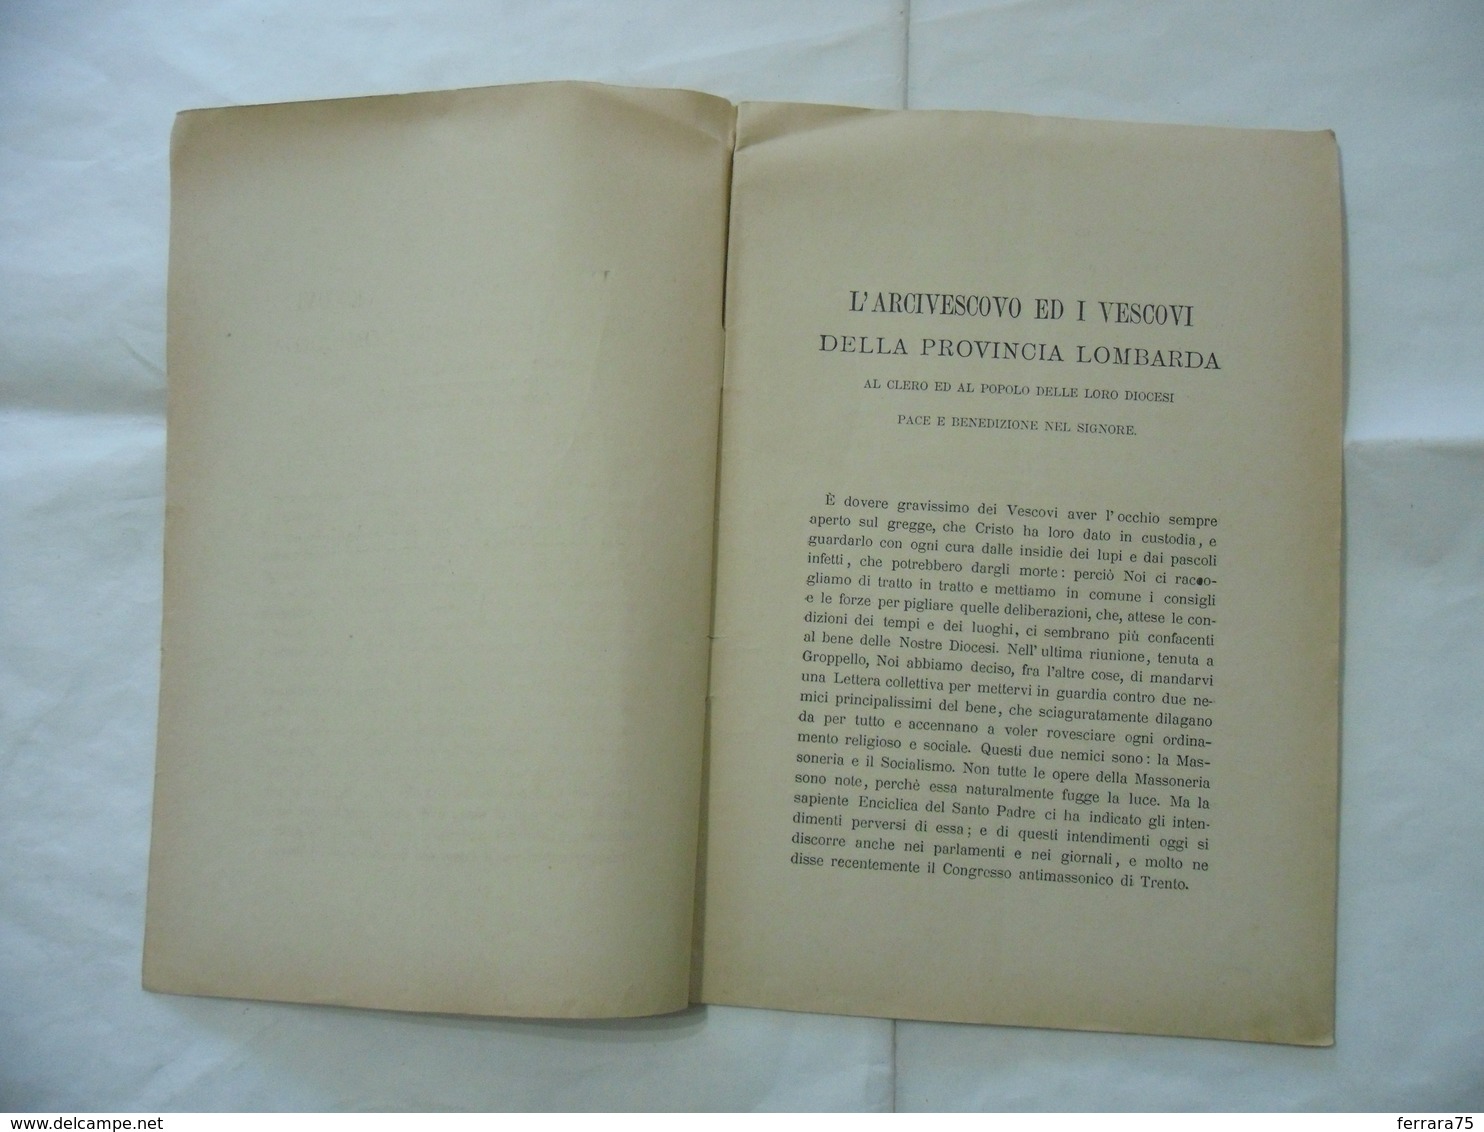 LETTERA DELL'EPISCOPATO LOMBARDO MASSONERIA SOCIALISMO DIOCESI DI MILANO 1896.- - Religion